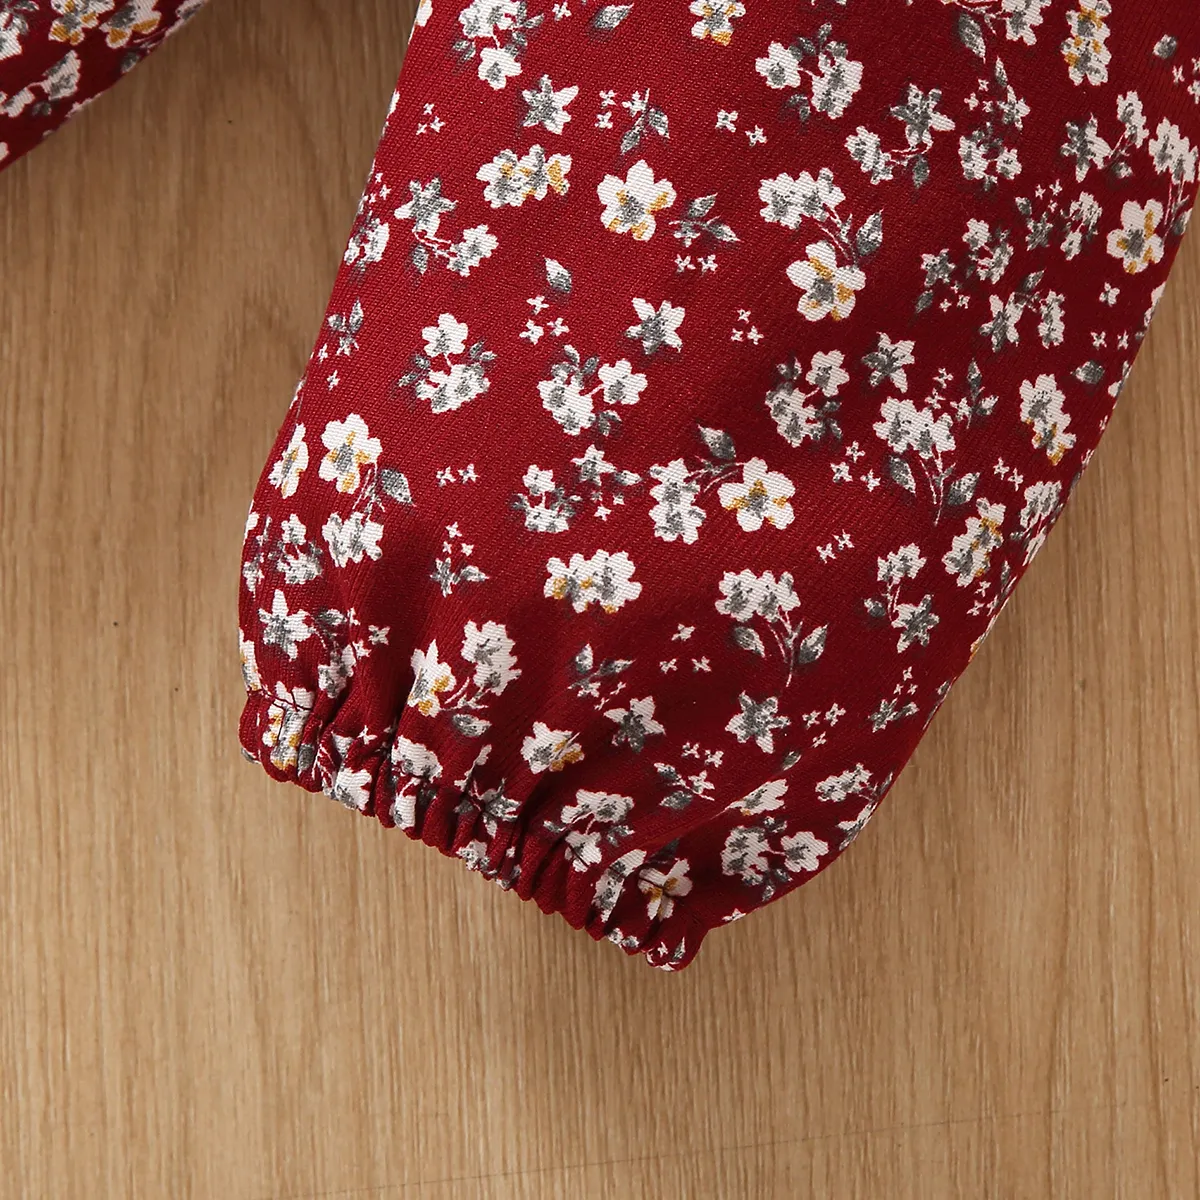 2 قطعة طفلة 95٪ قطن طويل الأكمام قميص من النوع الثقيل بطباعة أرنب الكرتون ومجموعة بنطلون طباعة الأزهار أحمر big image 1